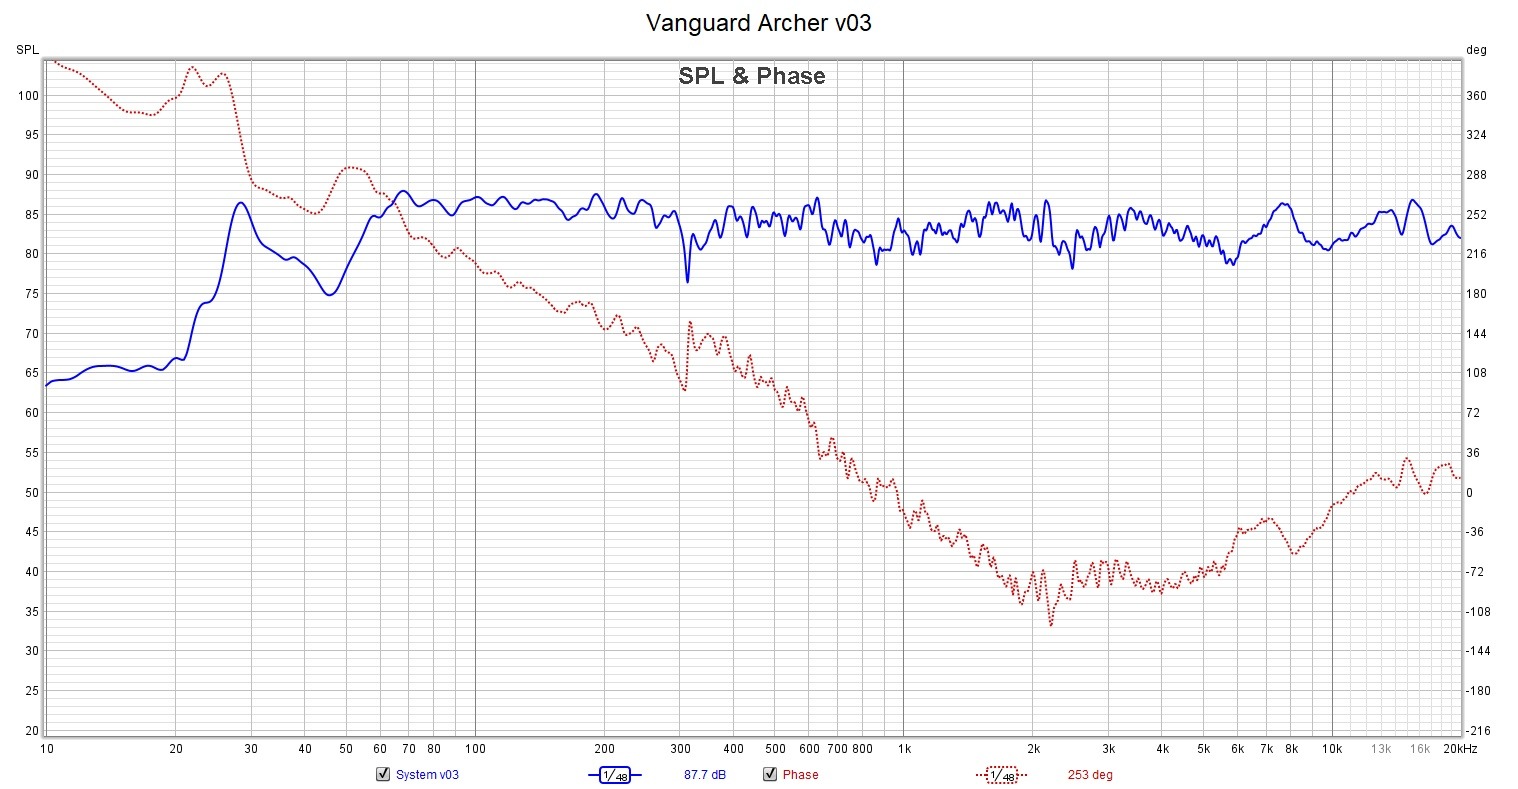 Vanguard-Archer-Phase-v03-Meas.jpg